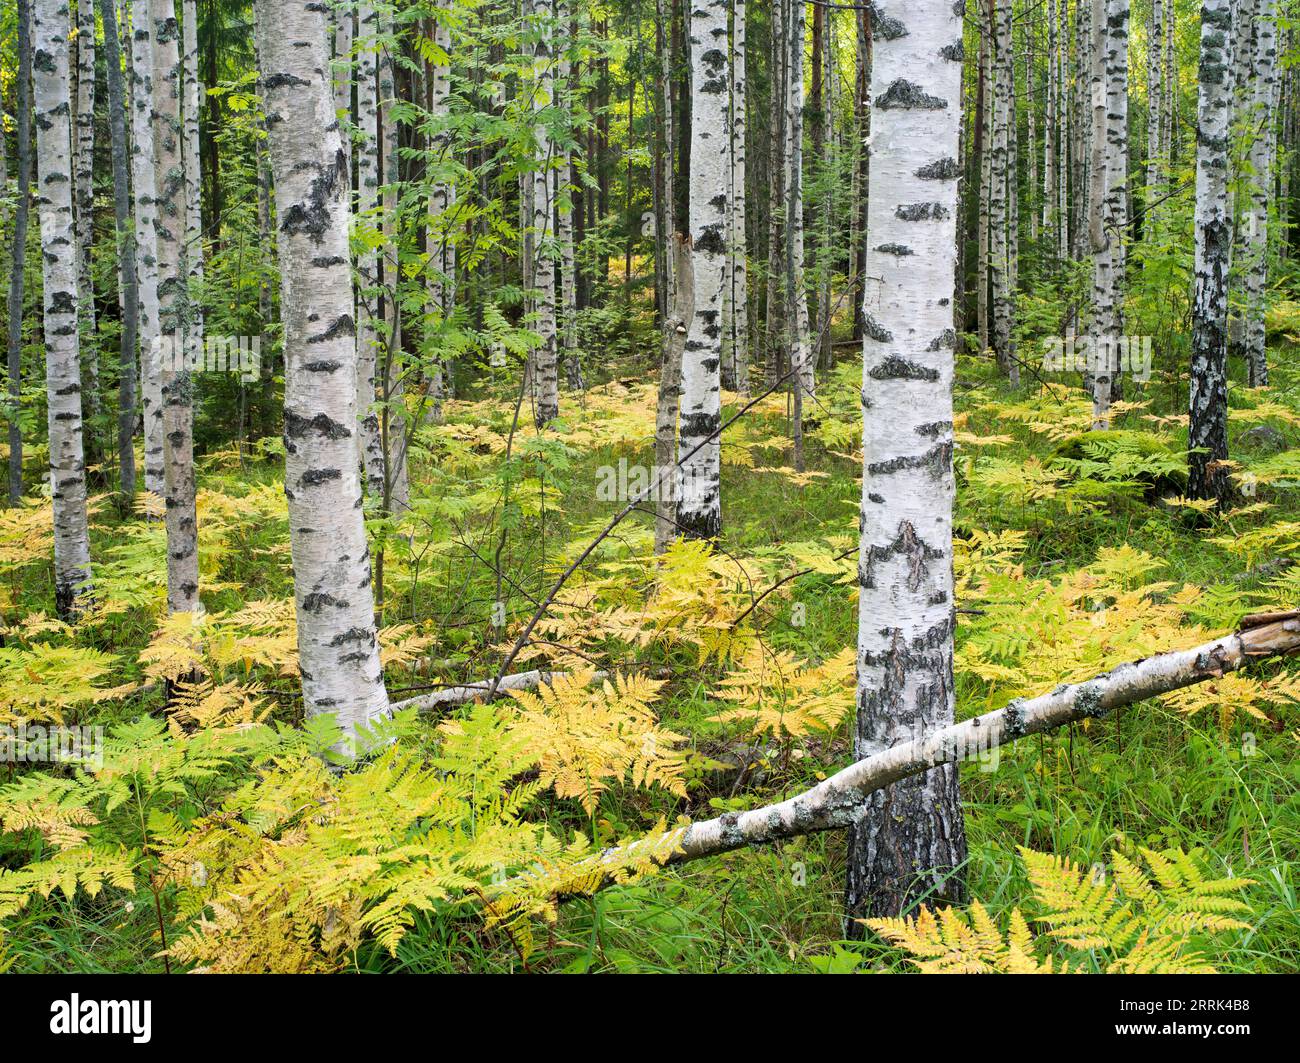 Birches and ferns near Ristiina, Saimaa, Finland Stock Photo